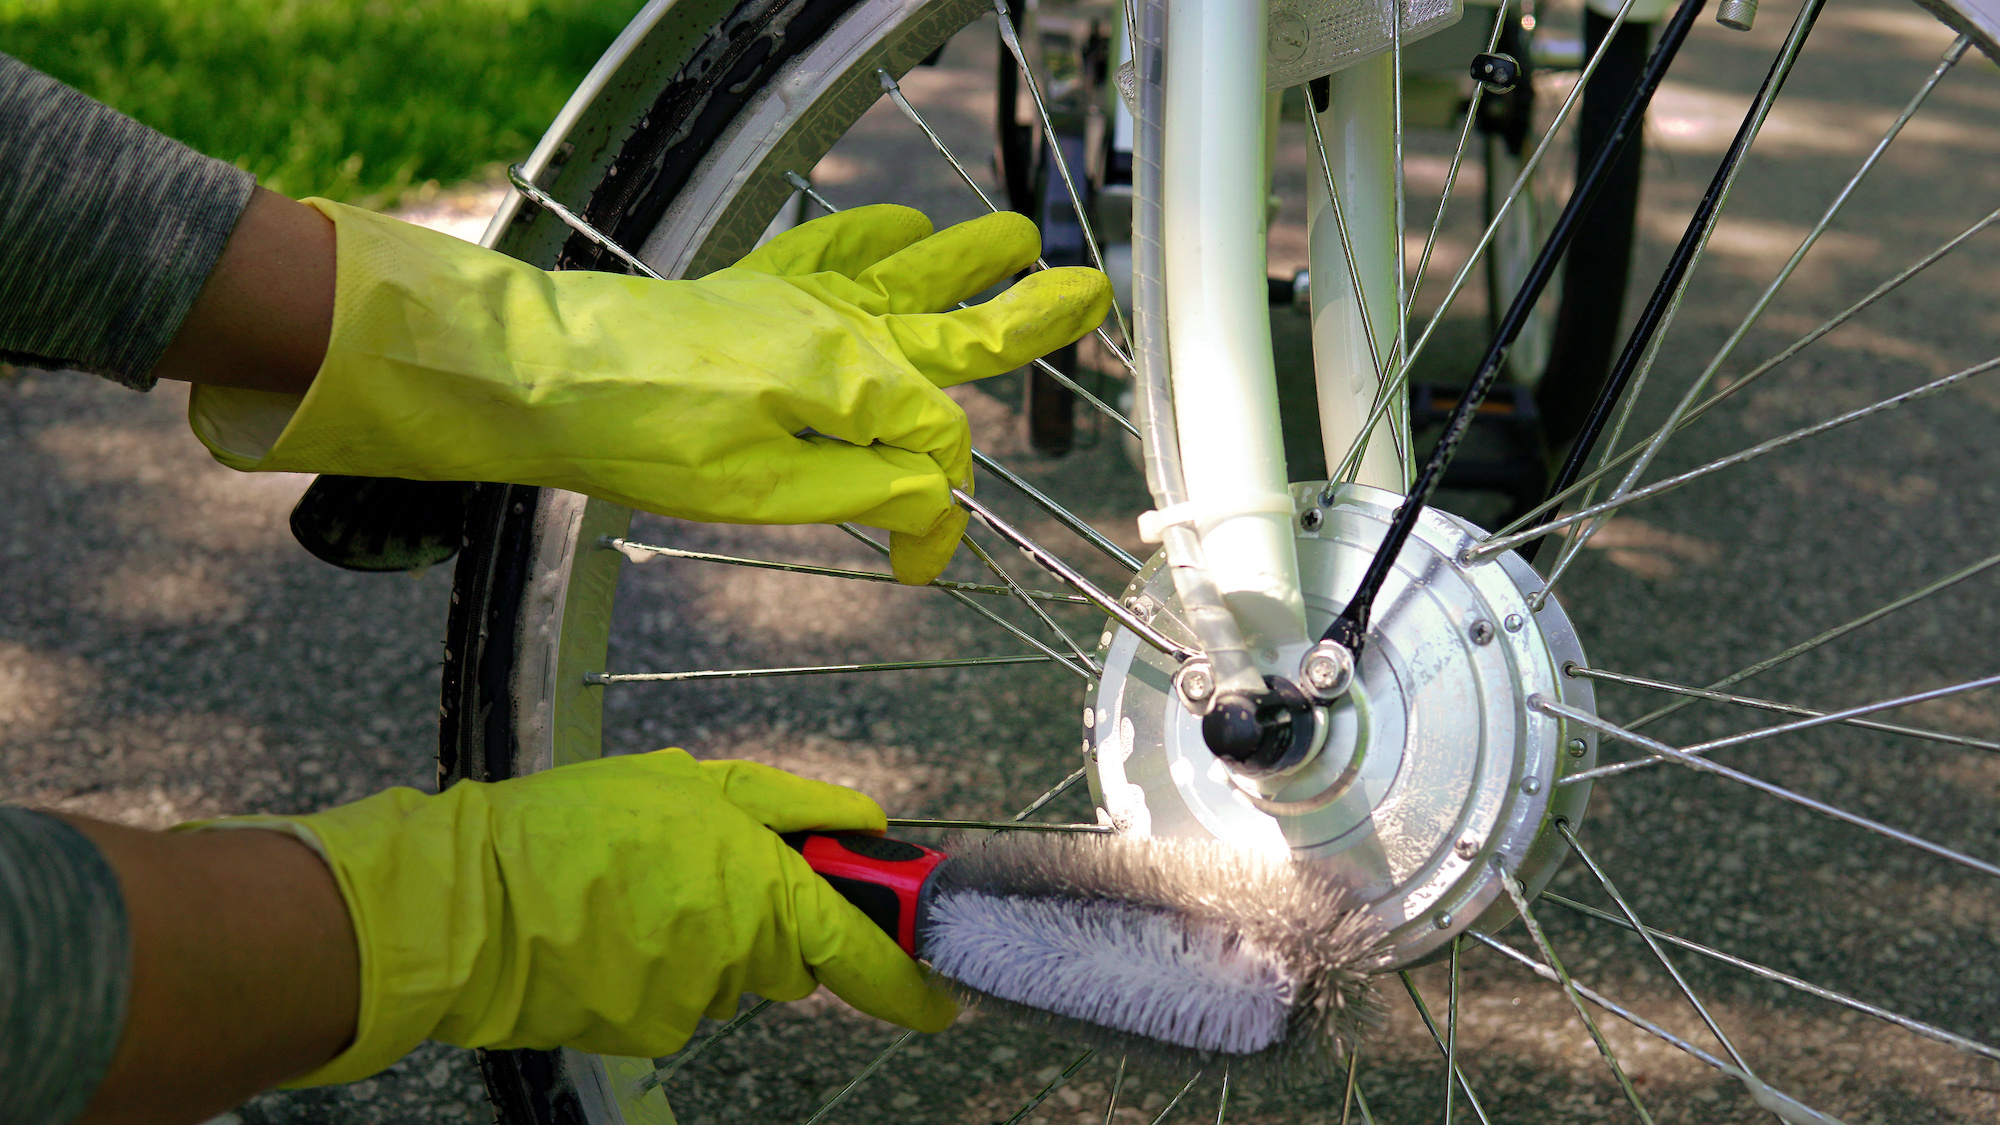 Ontrouw vastleggen Intrekking Tips voor onderhoud aan een elektrische fiets | viaBOVAG.nl